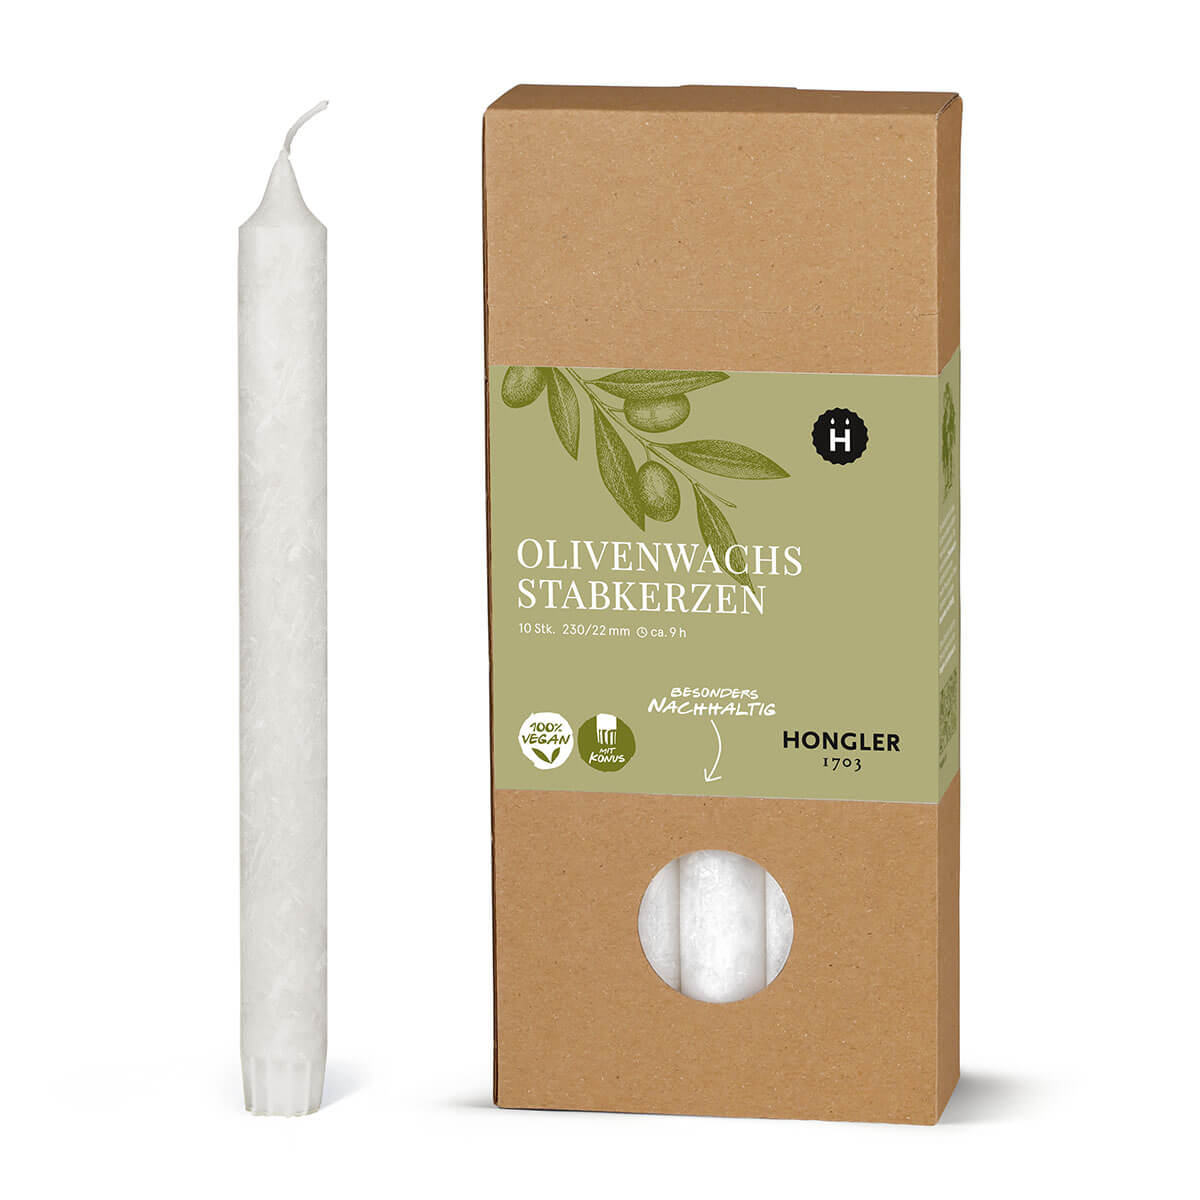 Stabkerzen aus Olivenwachs  – kristallin – 230/22 mm – vegan